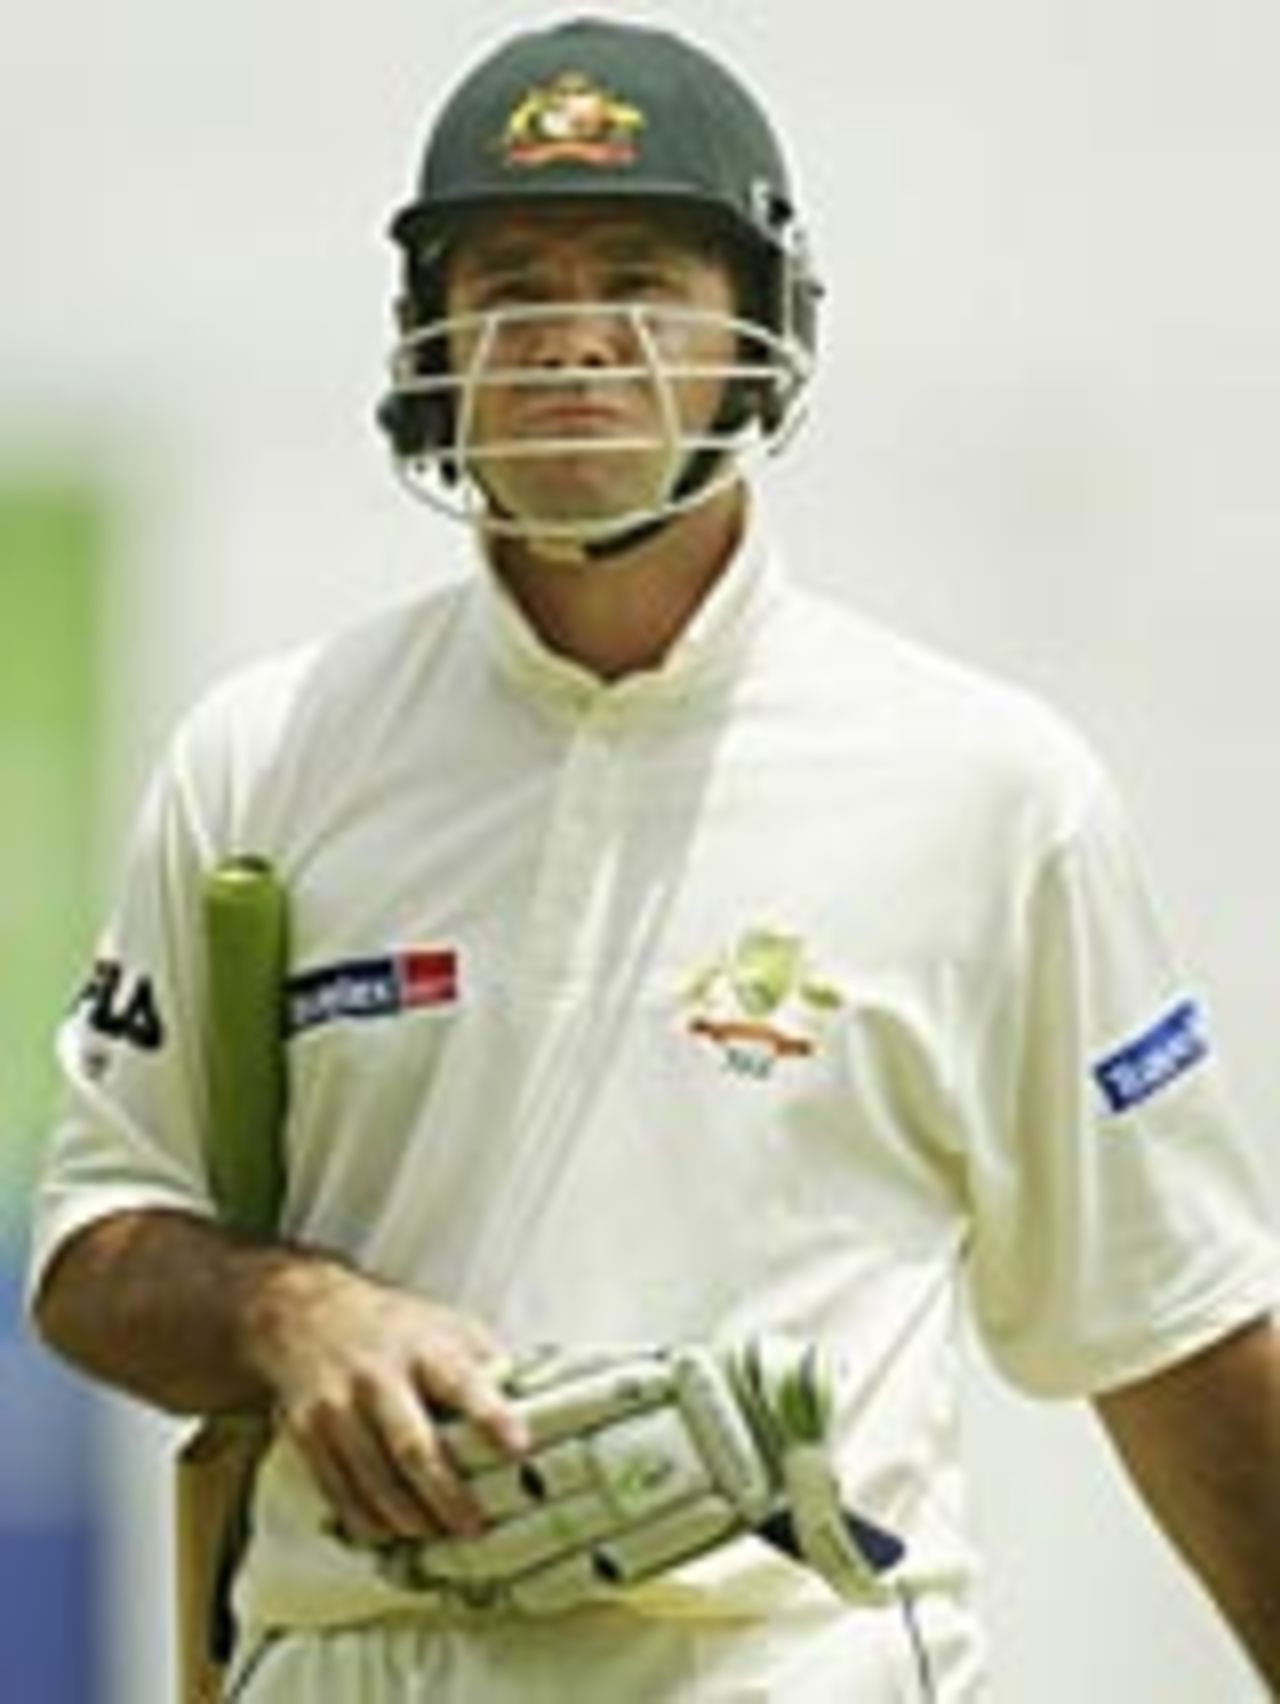 Ricky Ponting trudges off after being dismissed for 10, Sri Lanka v Australia, 2nd Test, Kandy, 1st day, March 16, 2004